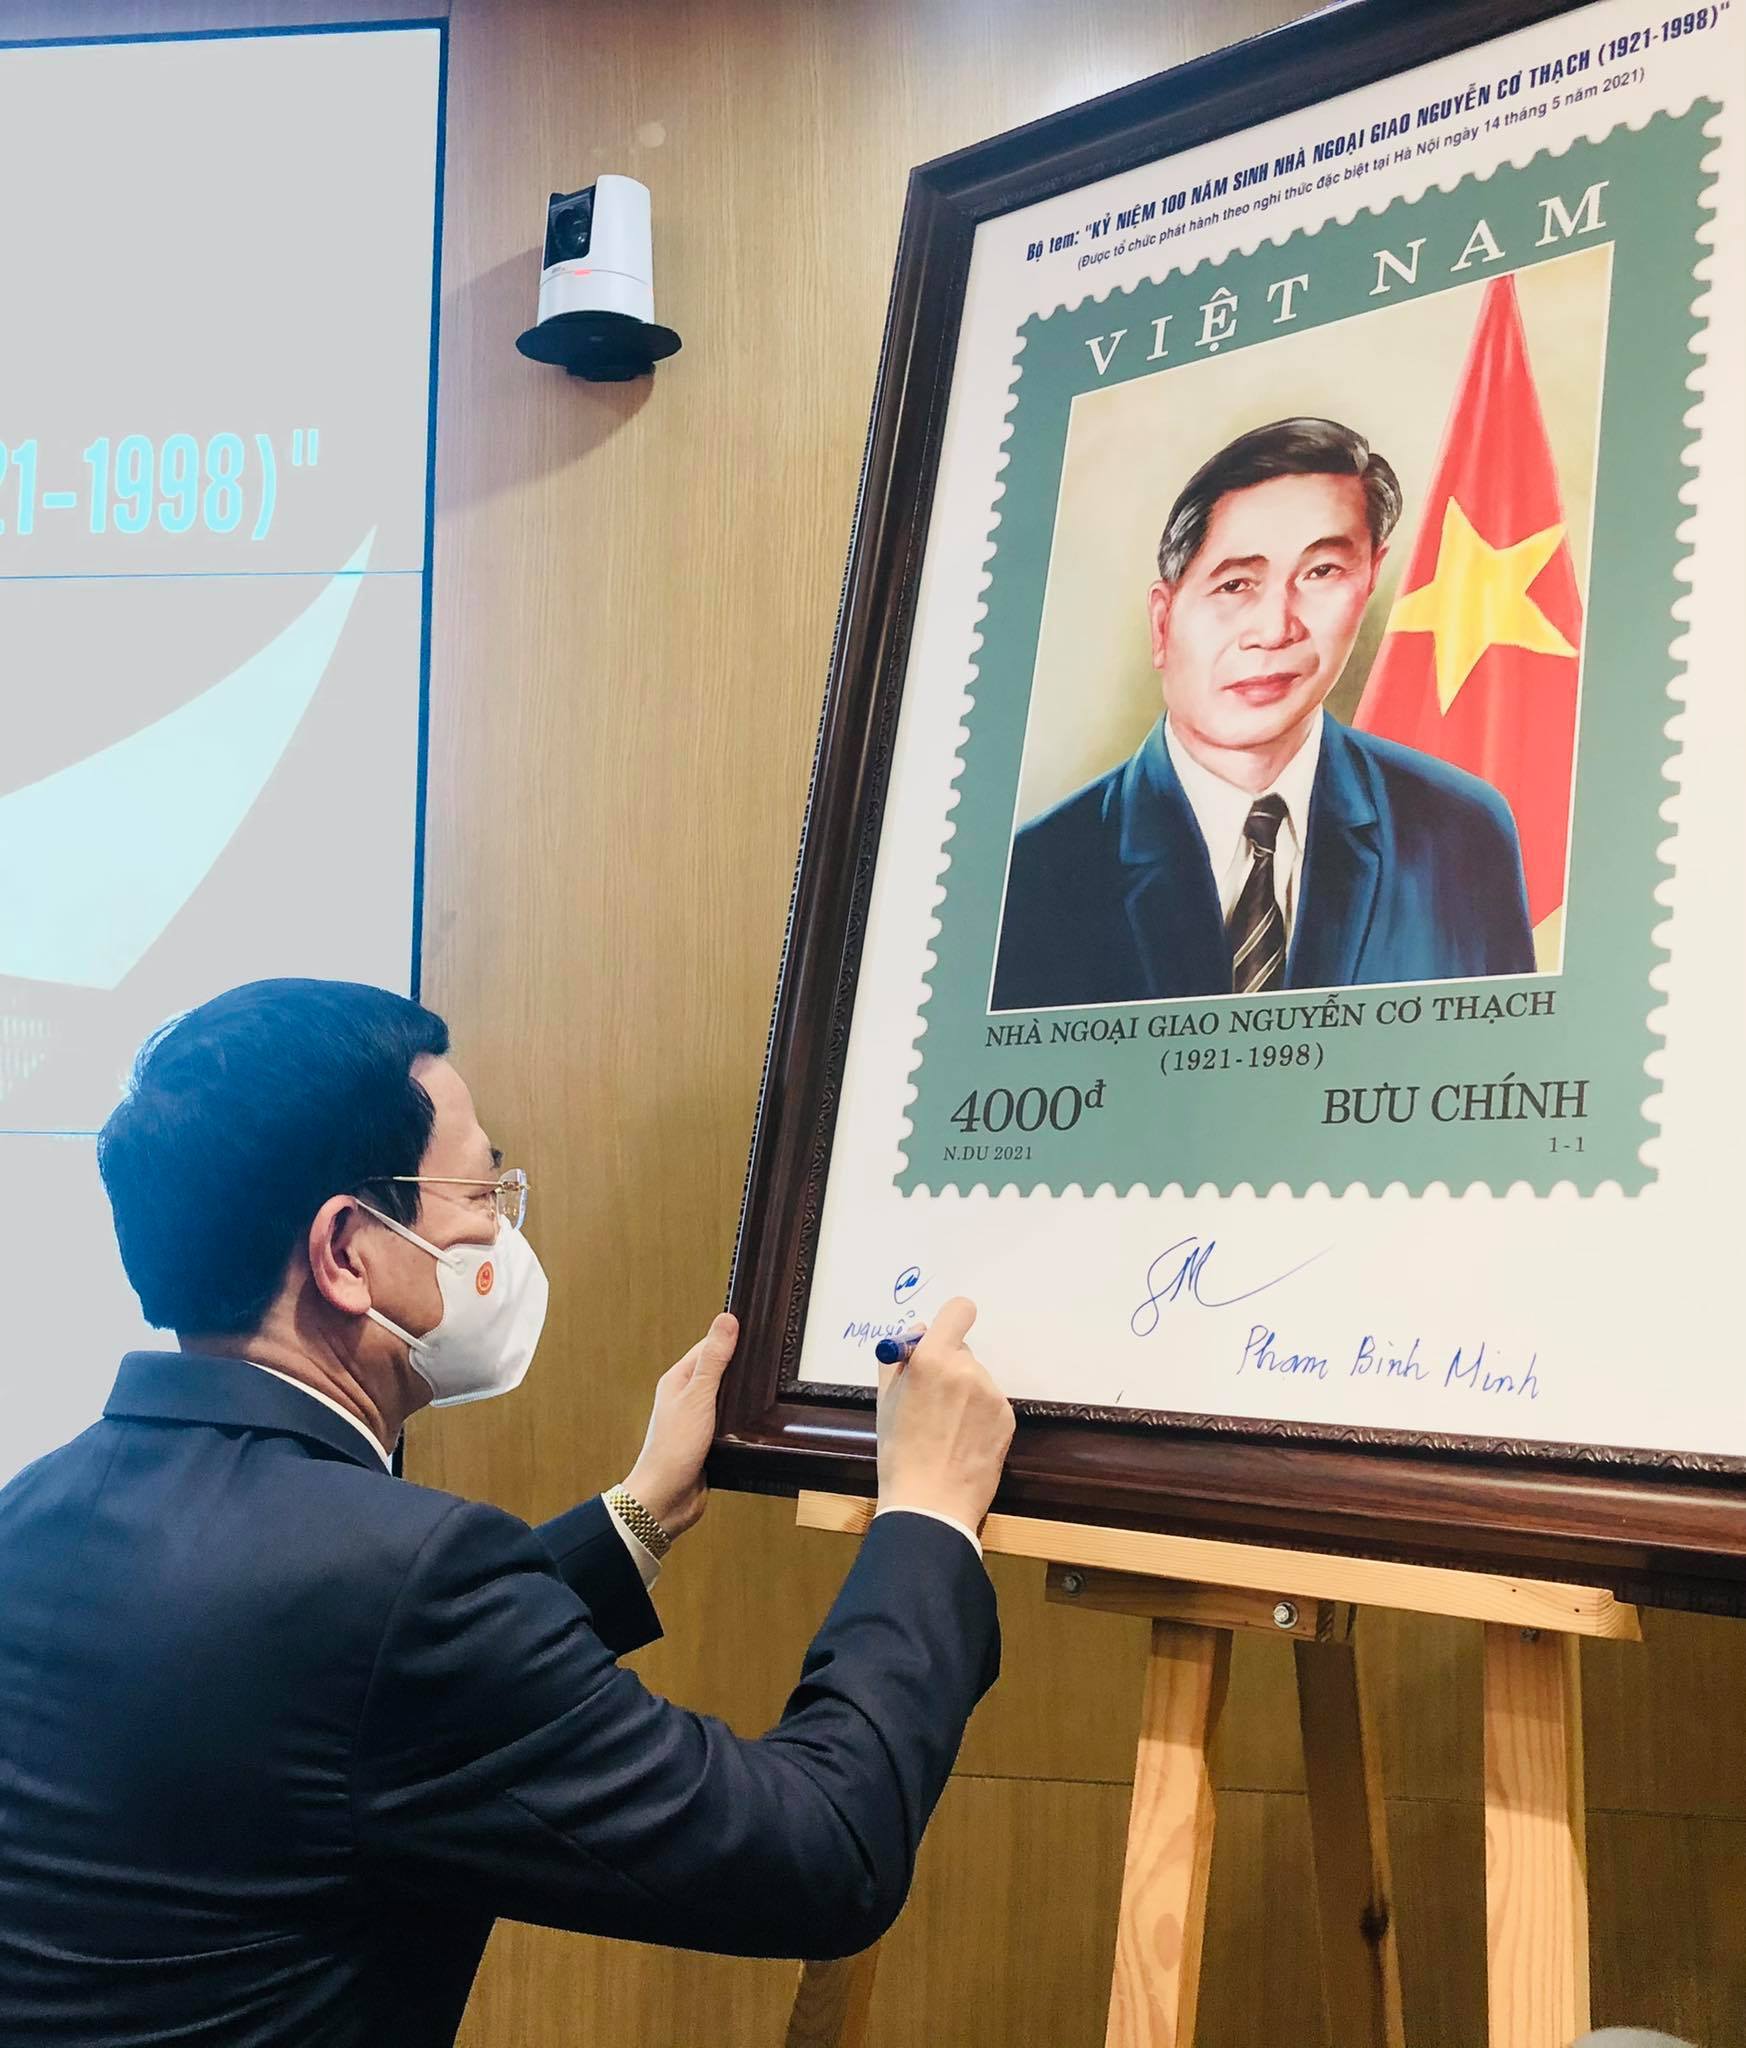 Tem đầu tiên về ngoại giao Việt Nam là một tác phẩm nghệ thuật độc đáo, đem lại giá trị lịch sử và văn hóa tuyệt vời cho người Việt. Hãy tìm hiểu về sự kiện này thông qua bức tranh vẽ nhà ở Hà Nội để hiểu thêm về tình hình giai đoạn đầu của đất nước Việt Nam.